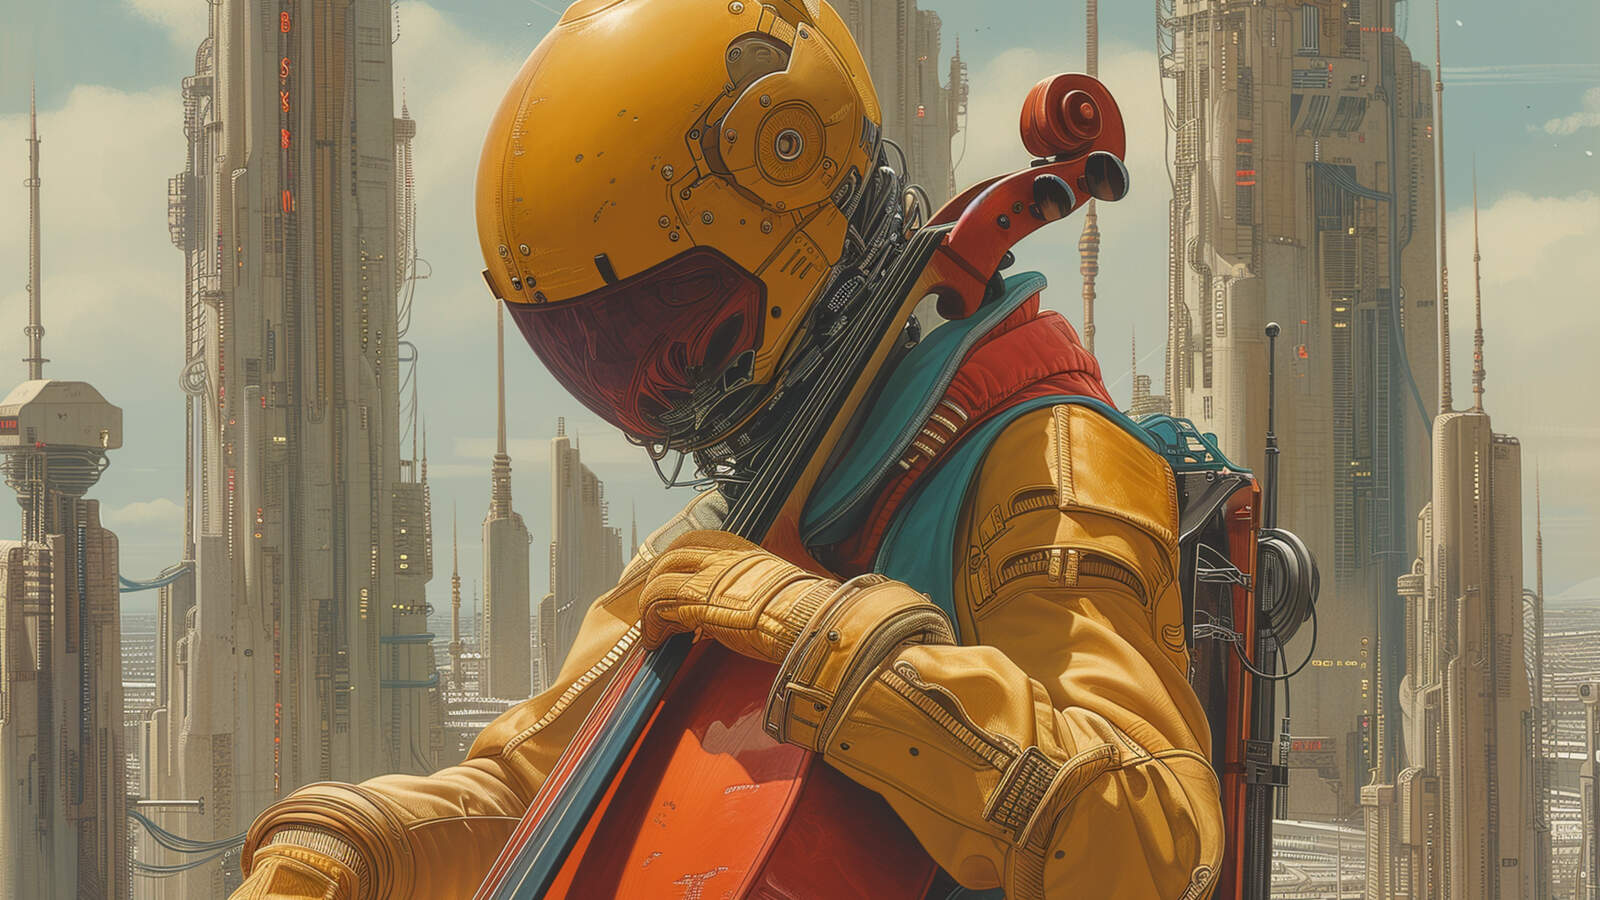 I förgrunden sitter en figur i åtsittande gul rymddräkt och hjälm som spelar cello. I bakgrunden syns en futuristisk stad.